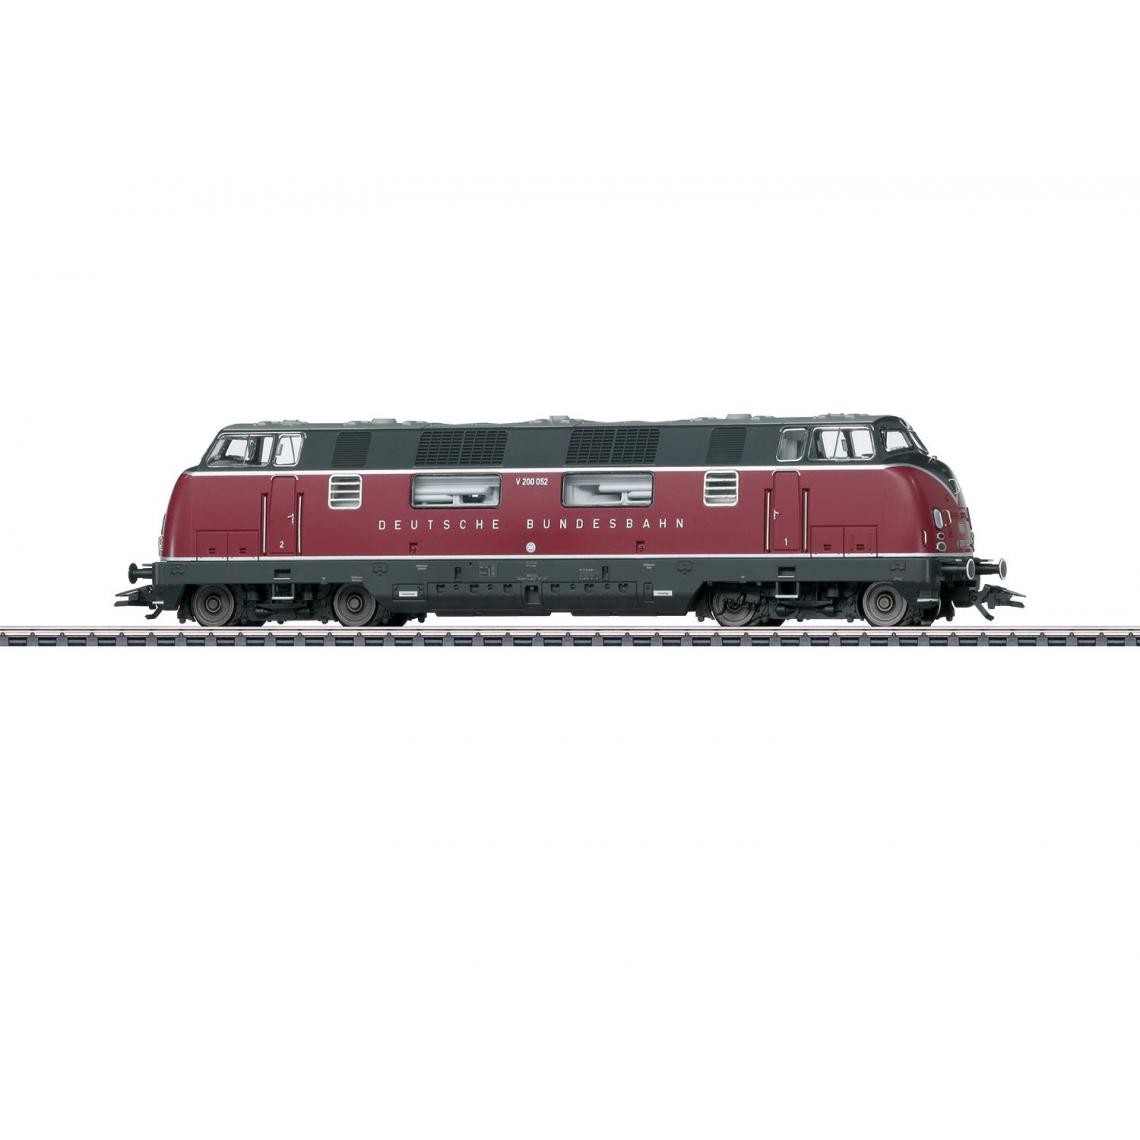 Inconnu - Locomotive diesel Märklin 37806 HO - Accessoires et pièces